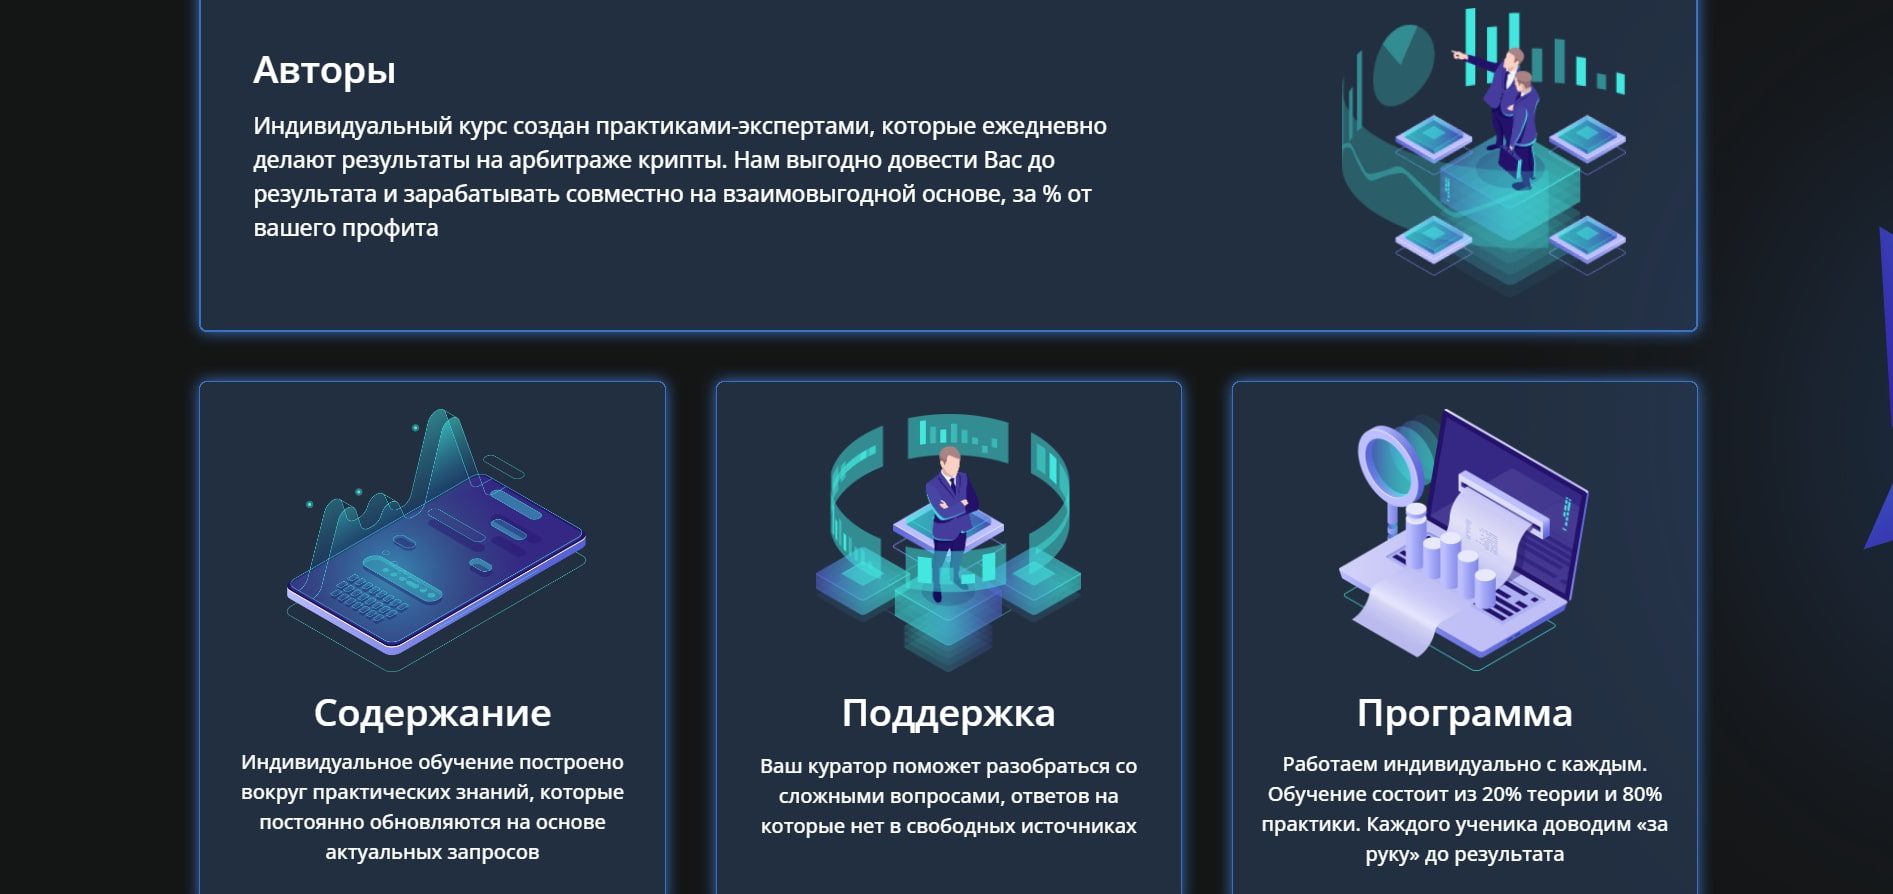 Проект Arbitrage Boss.ru